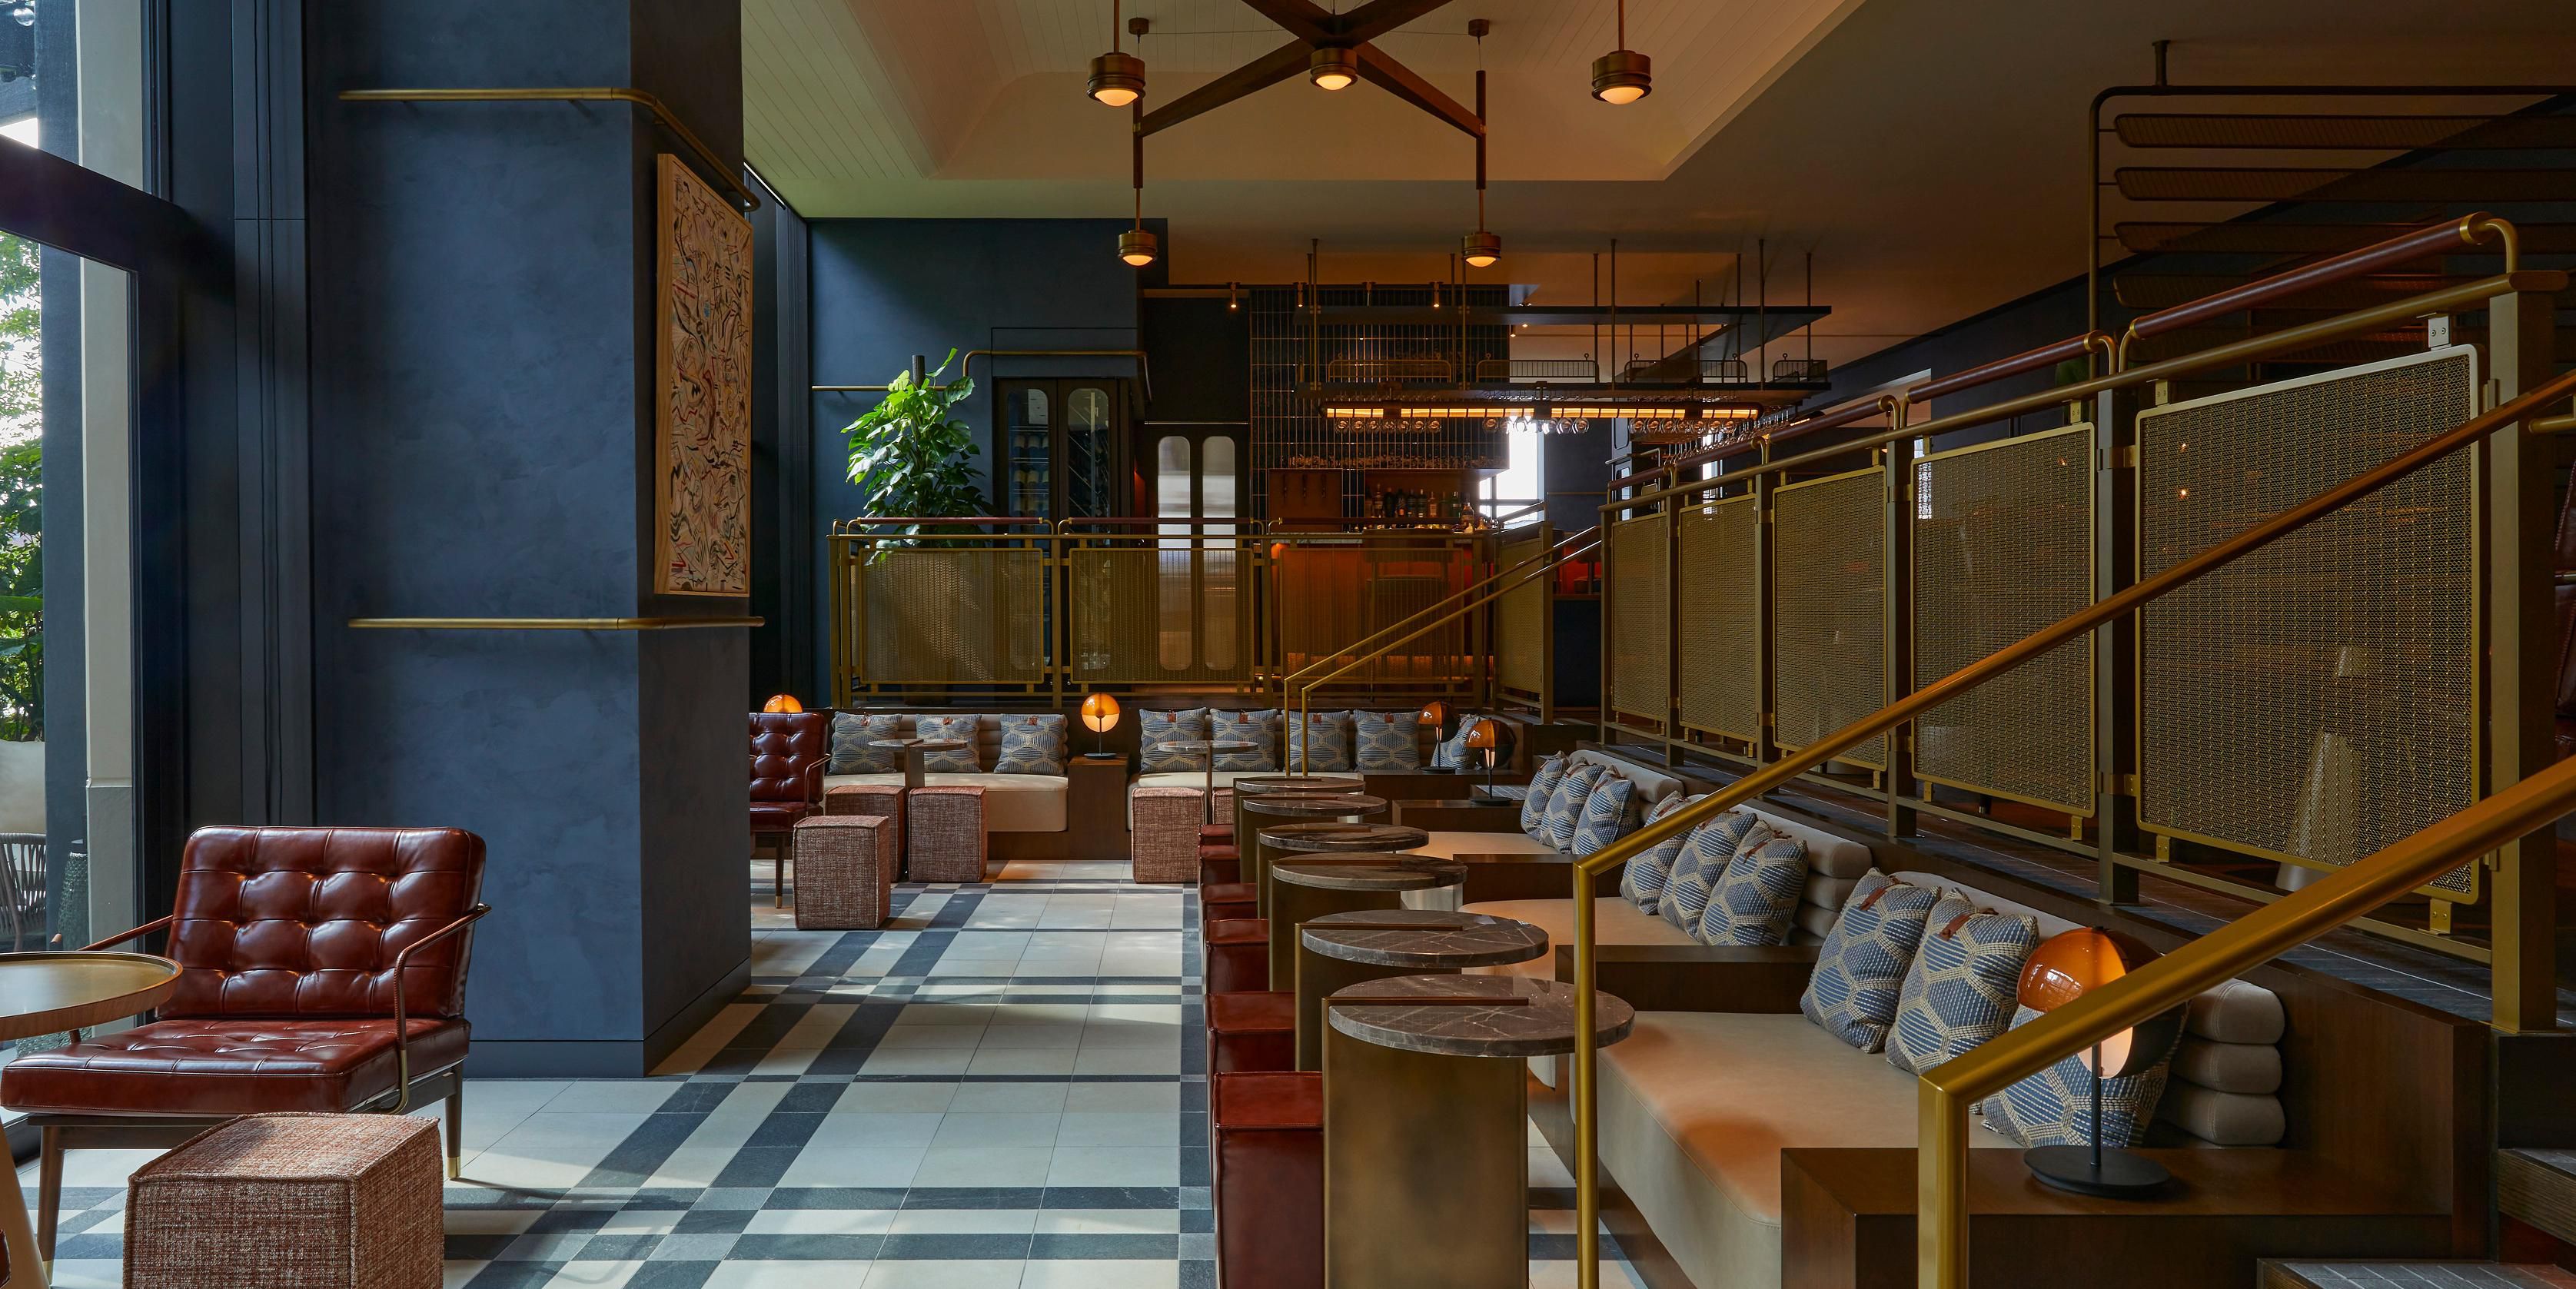 Meet District - Brasserie, Lounge, Terrace.